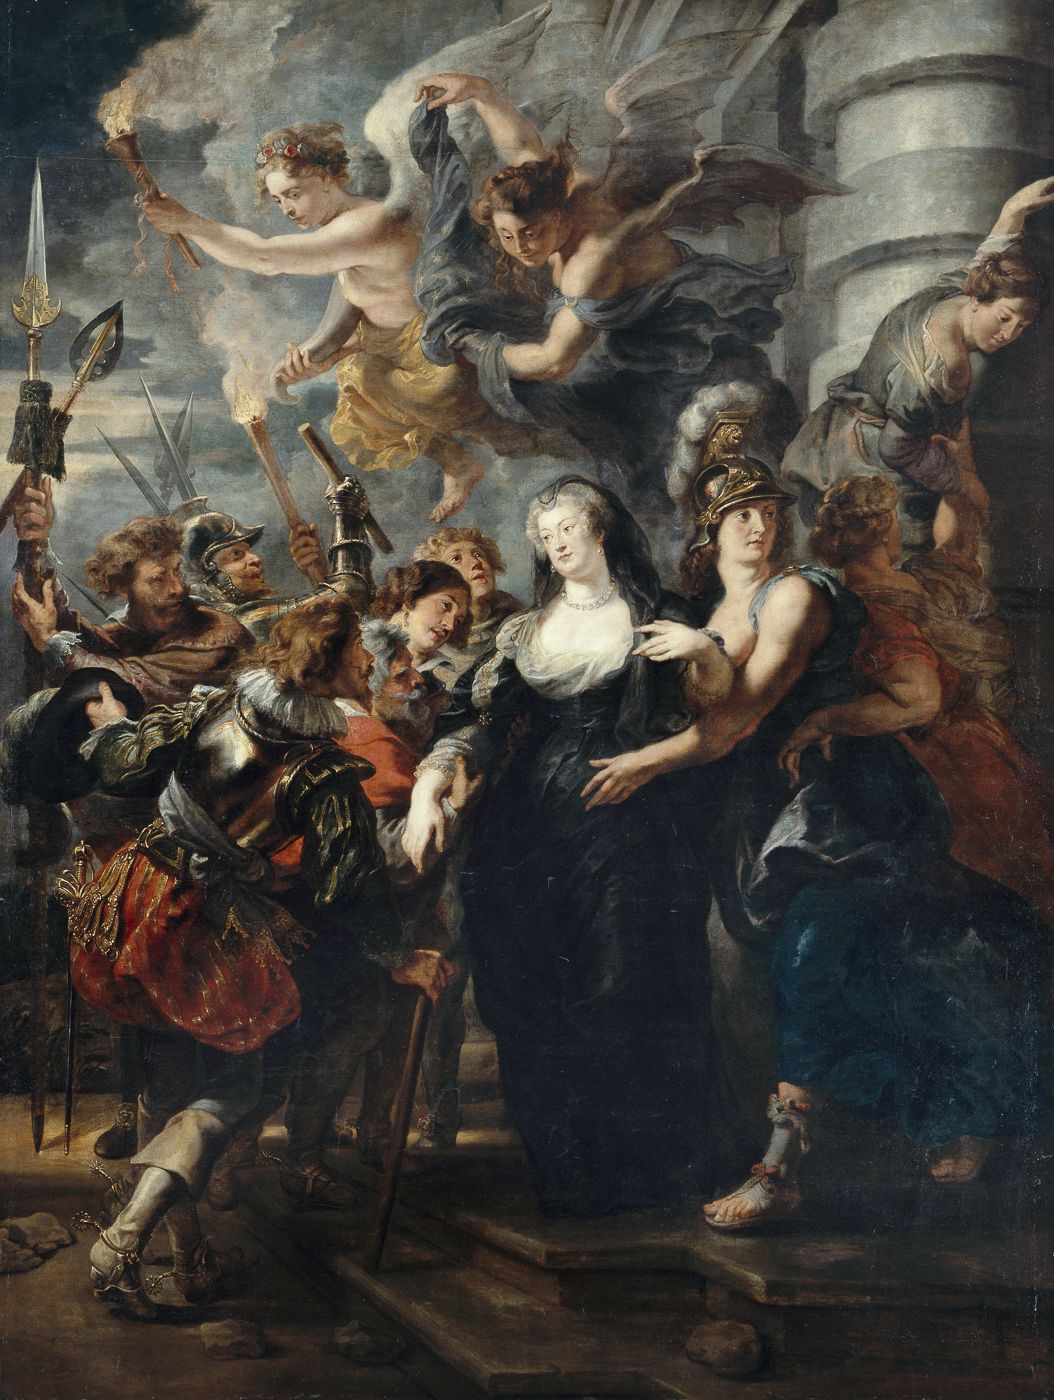 La reine s'enfuit du château de Blois dans la nuit du 21 au 22 février 1619